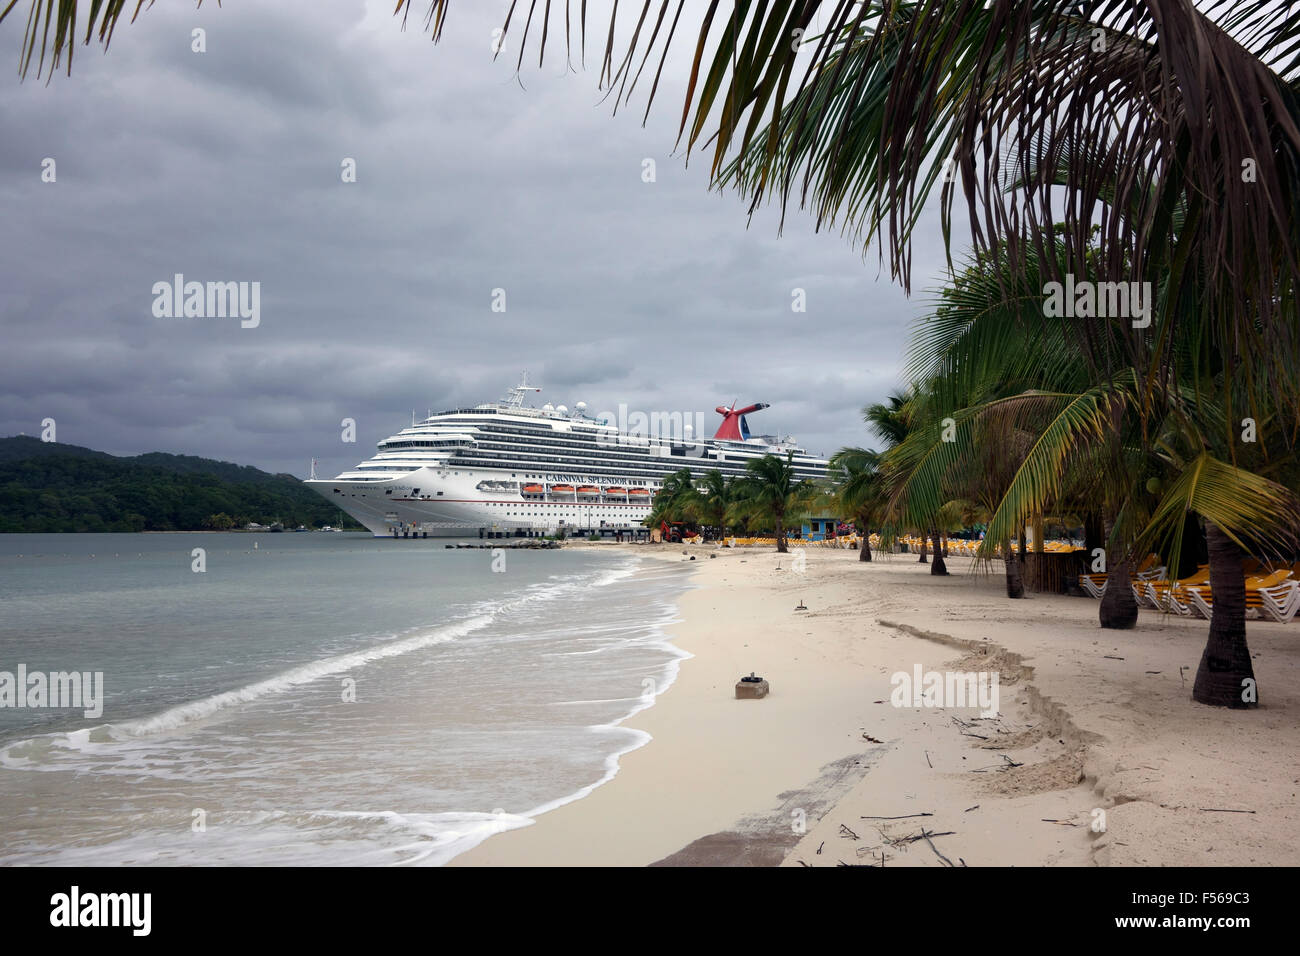 Carnival Cruise Ship, Playa de caoba, Roatán, Honduras Foto de stock